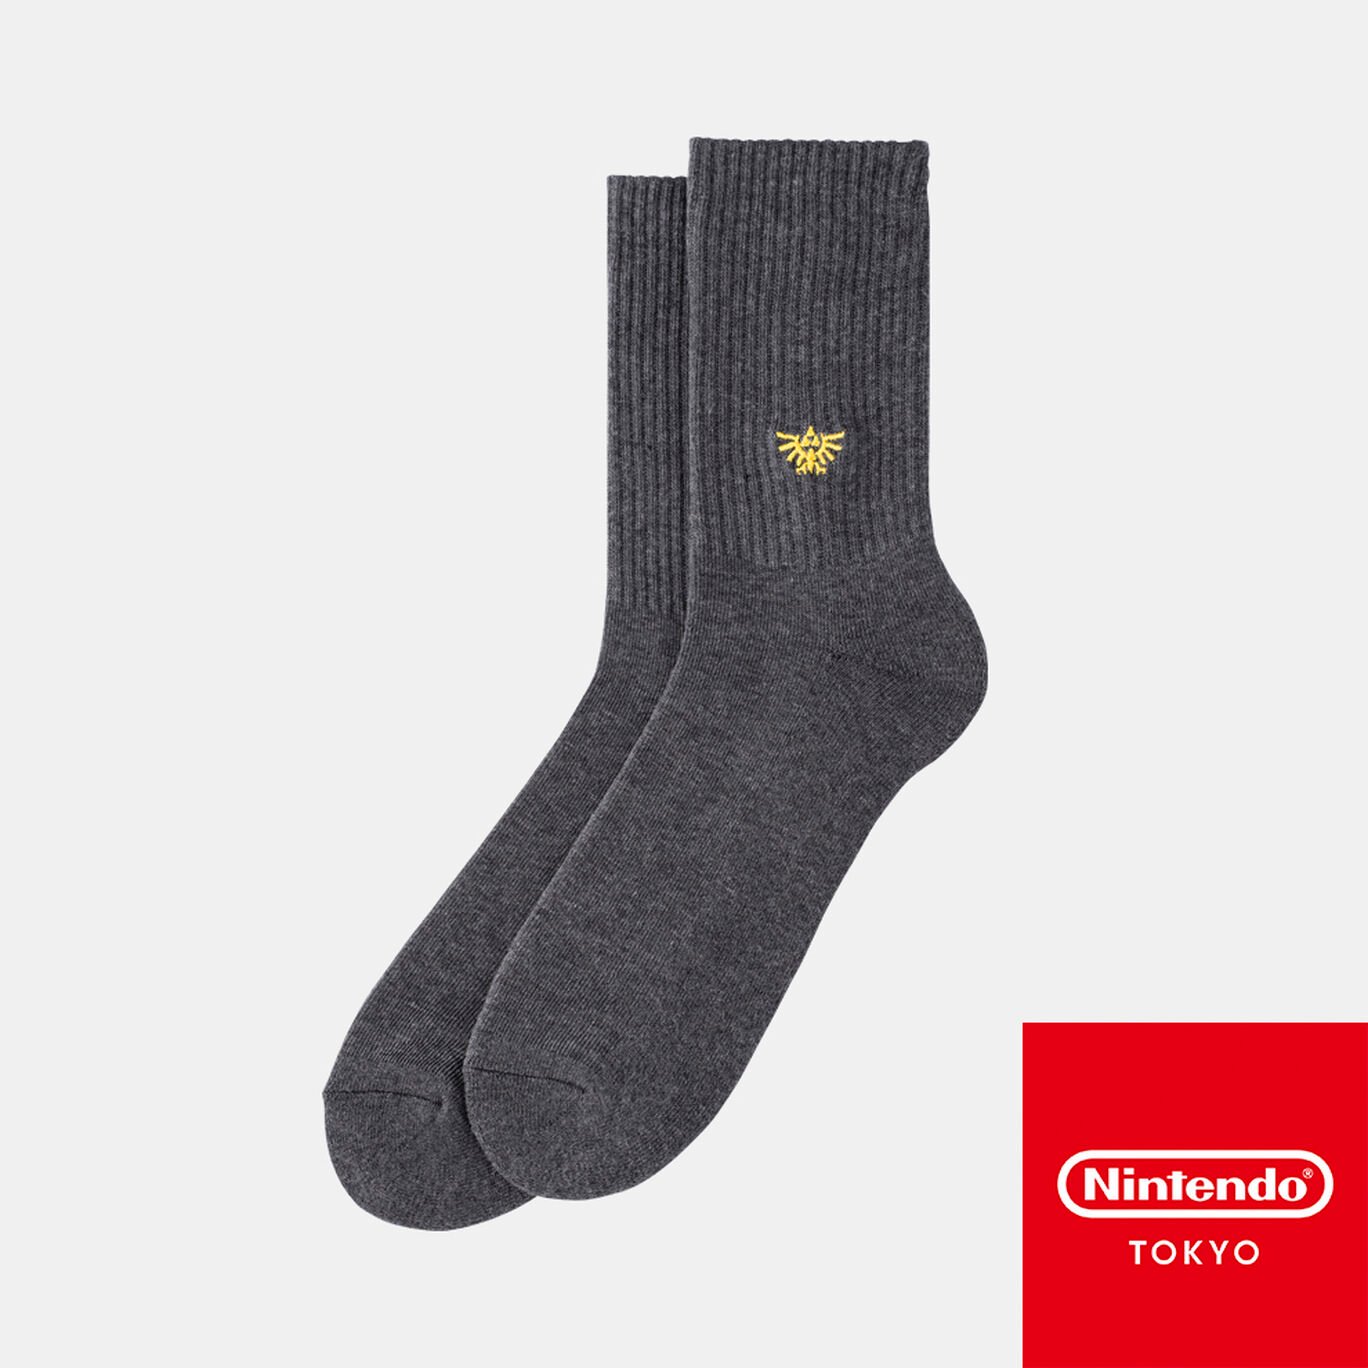 靴下 ハイラルの紋章 グレー ゼルダの伝説【Nintendo TOKYO取り扱い商品】